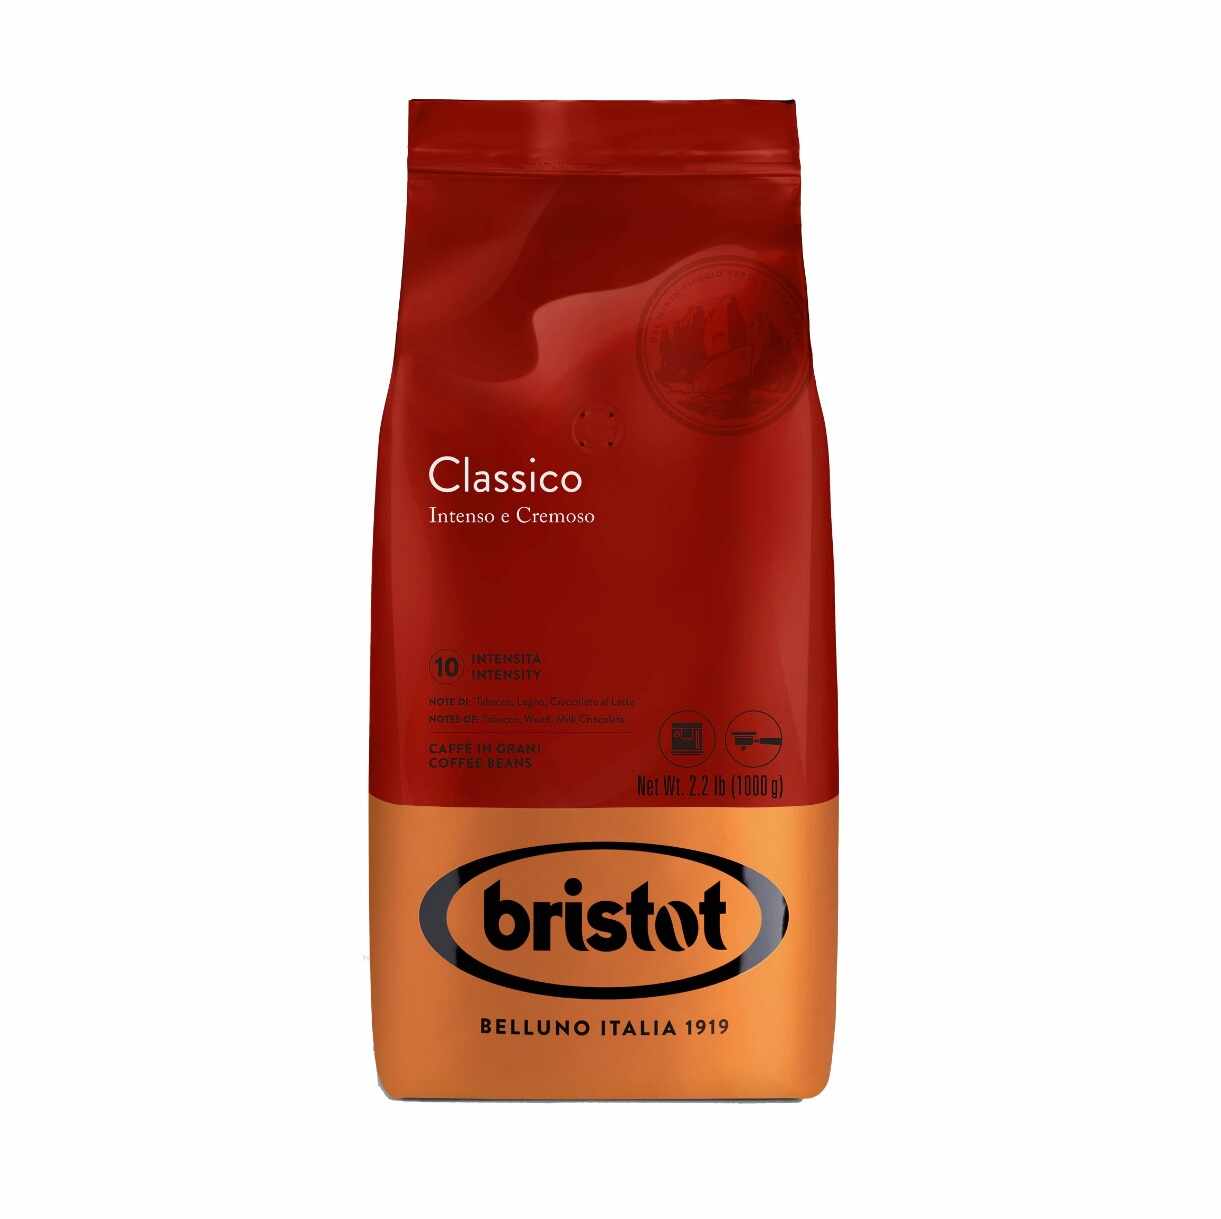 Bristot Classico cafea boabe 1 kg